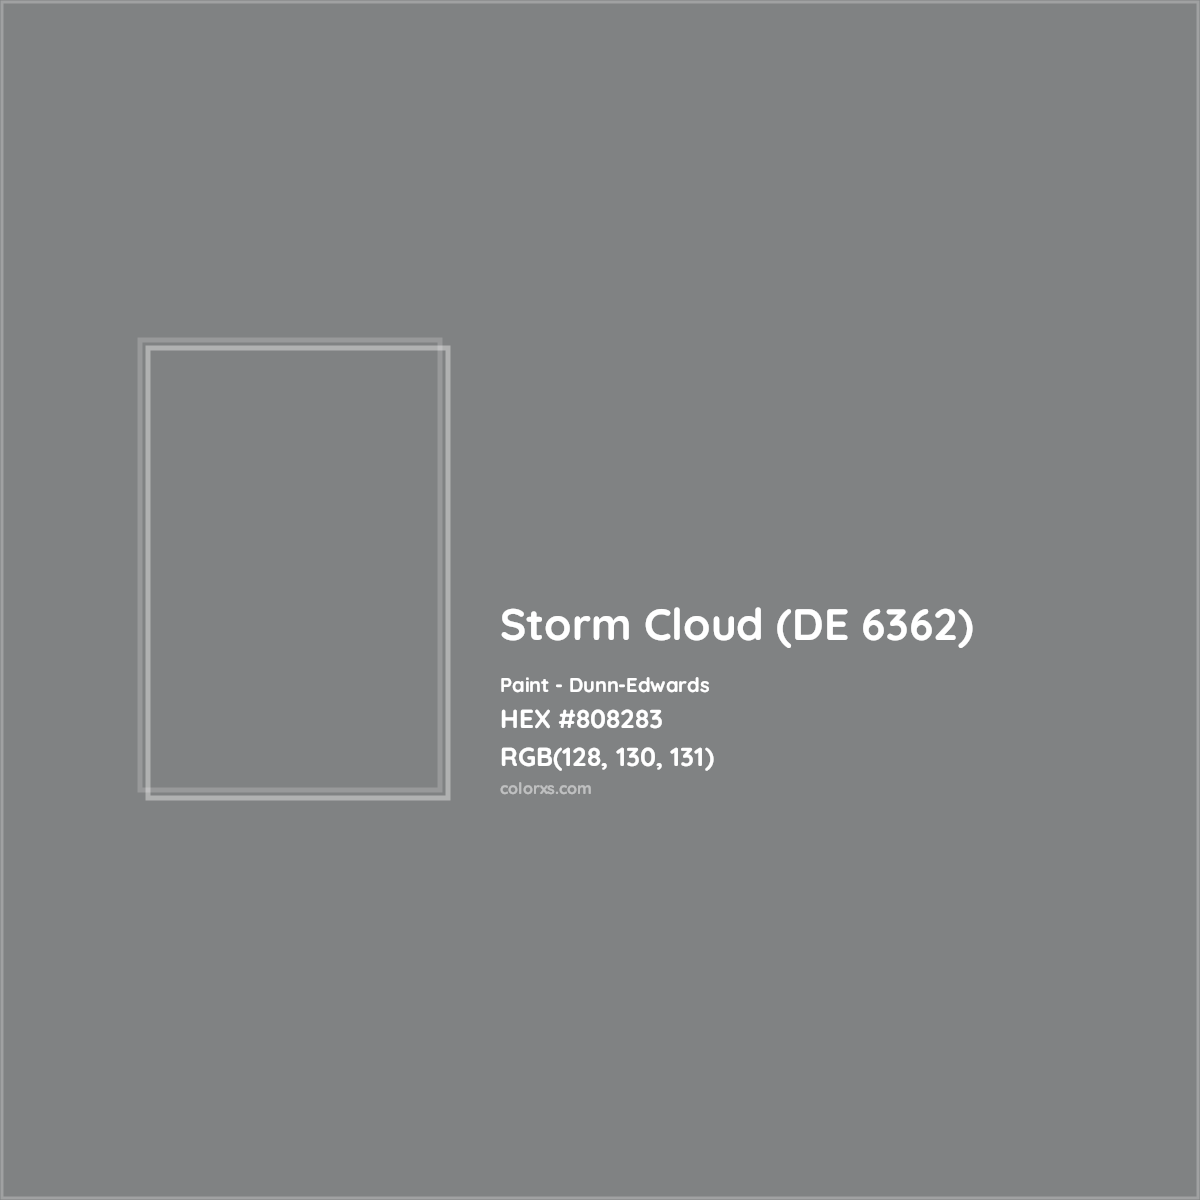 HEX #808283 Storm Cloud (DE 6362) Paint Dunn-Edwards - Color Code